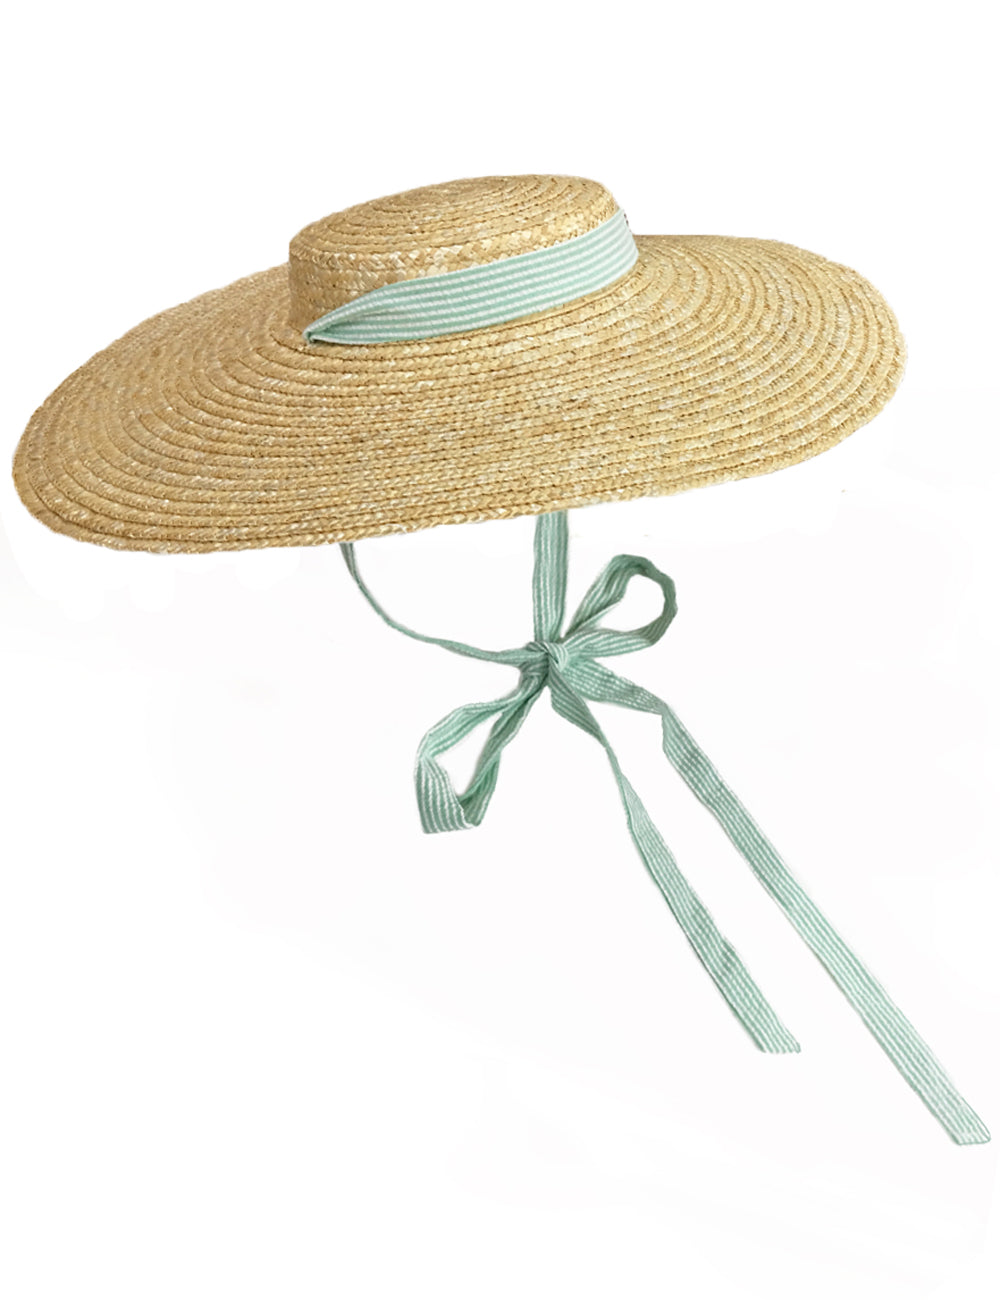 Green Seersucker Vintage Style Woven Large Brim Straw Hat